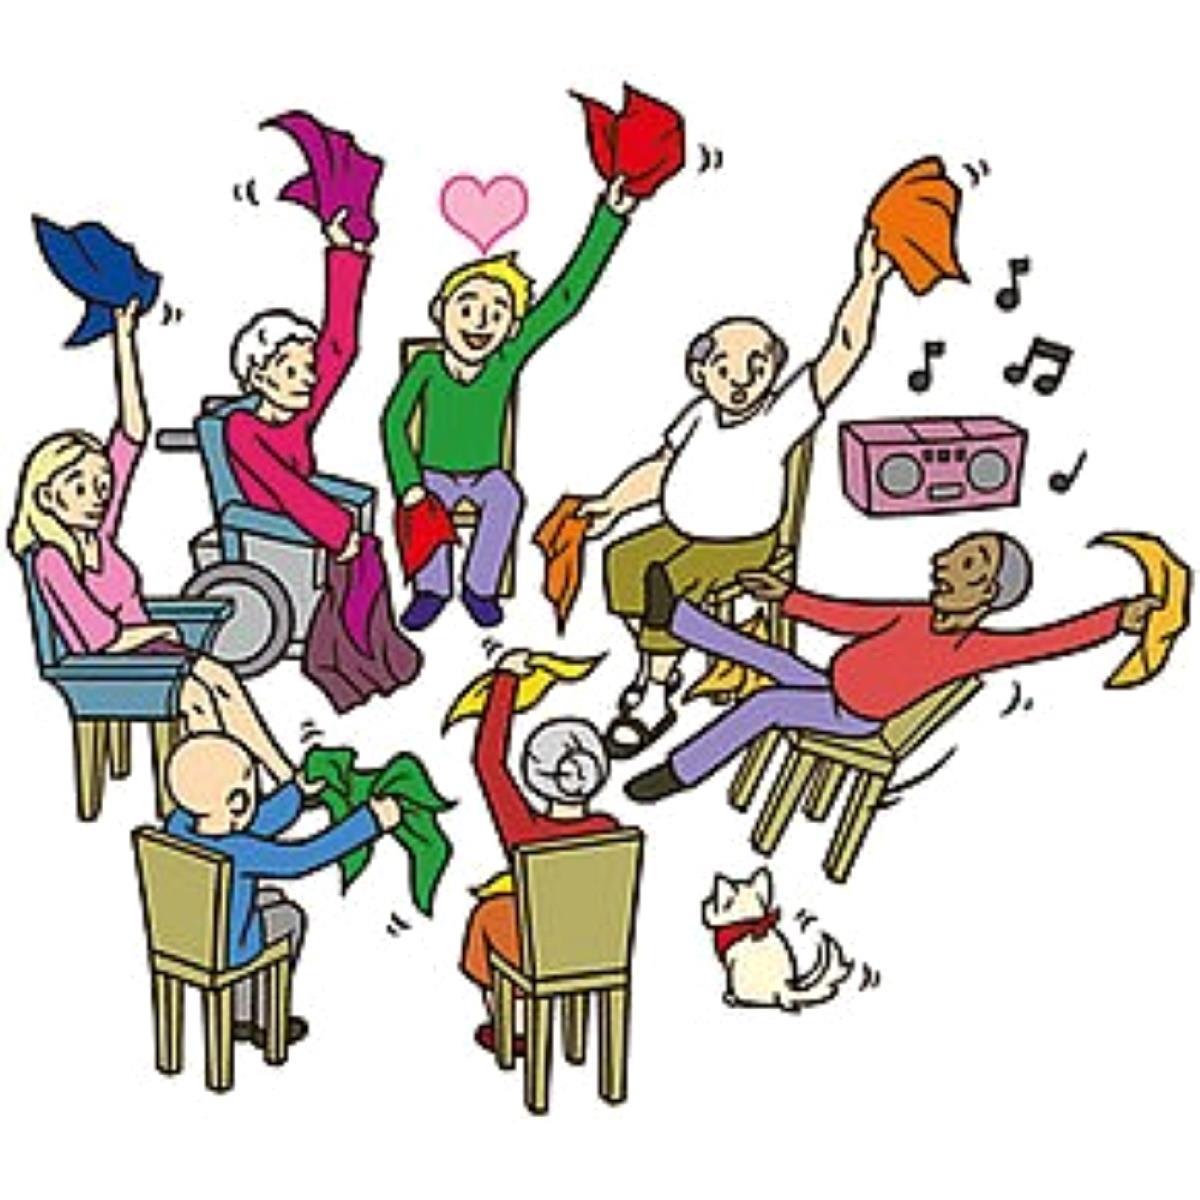 Tegning av sju eldre mennesker som sitter og vifter med tøystykker til tonene fra en radio. - Klikk for stort bilde